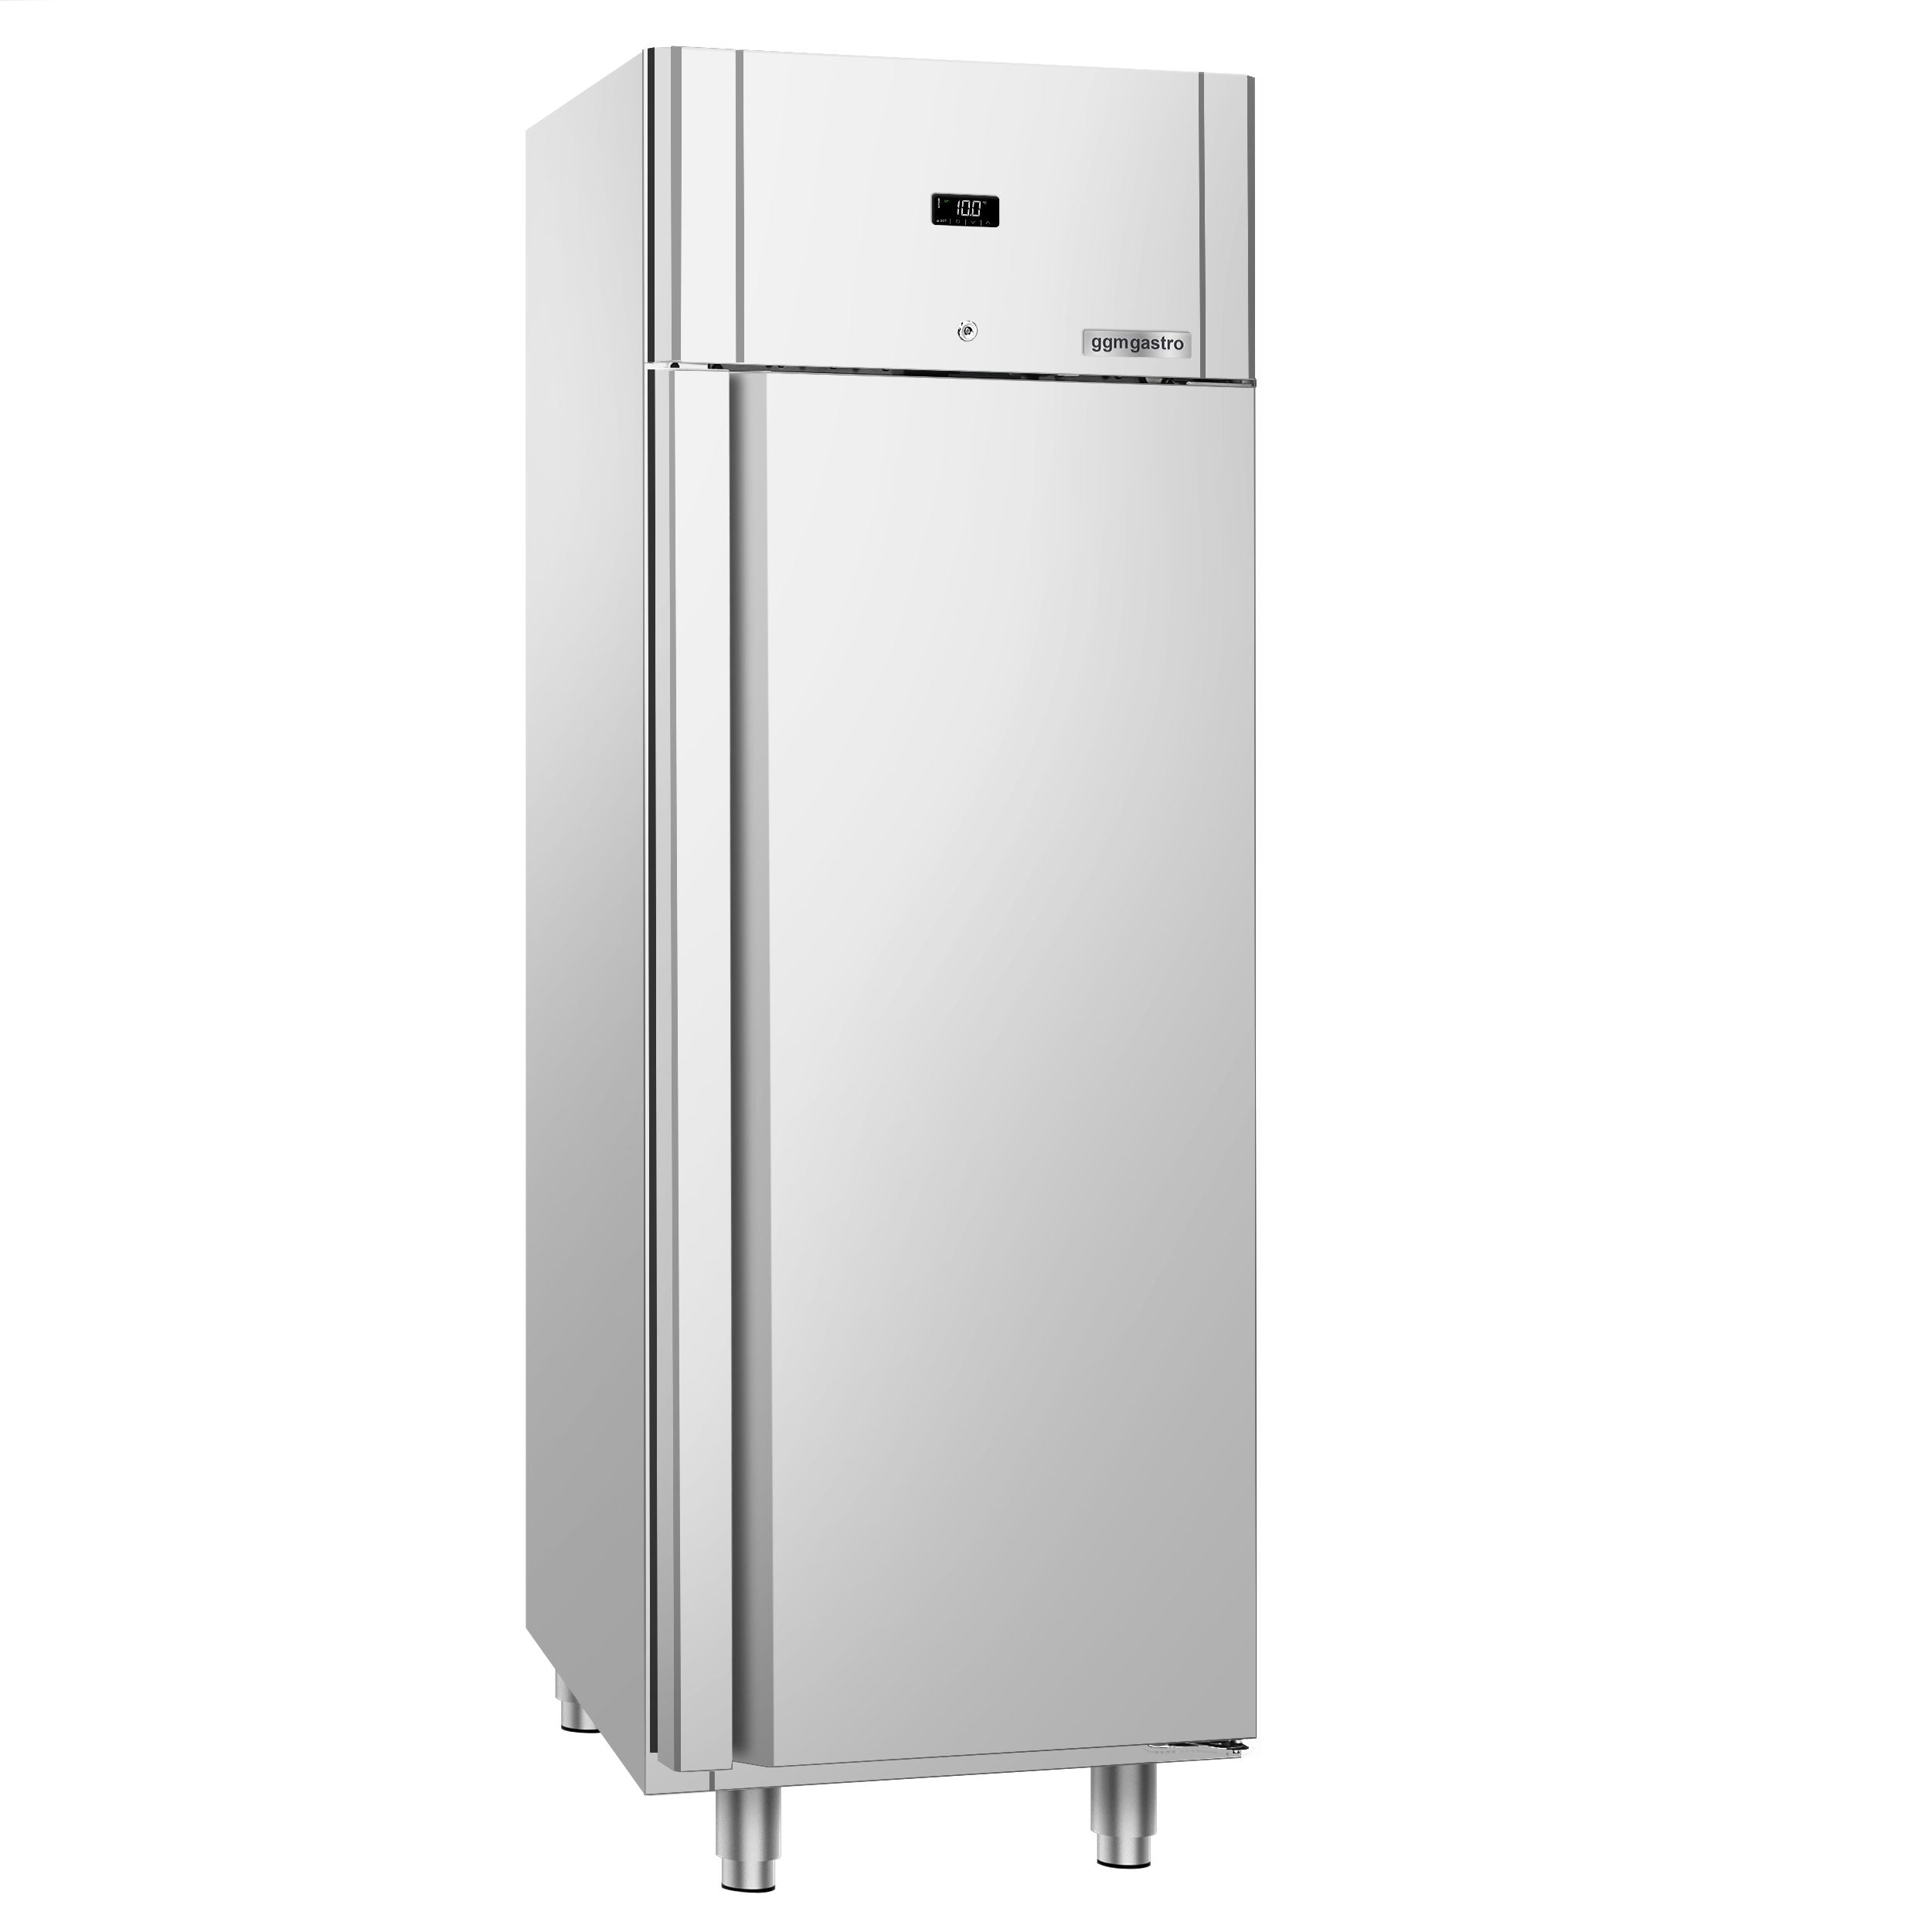 Køleskab PREMIUM - GN 2/1 - 600 liter - med 1 dør